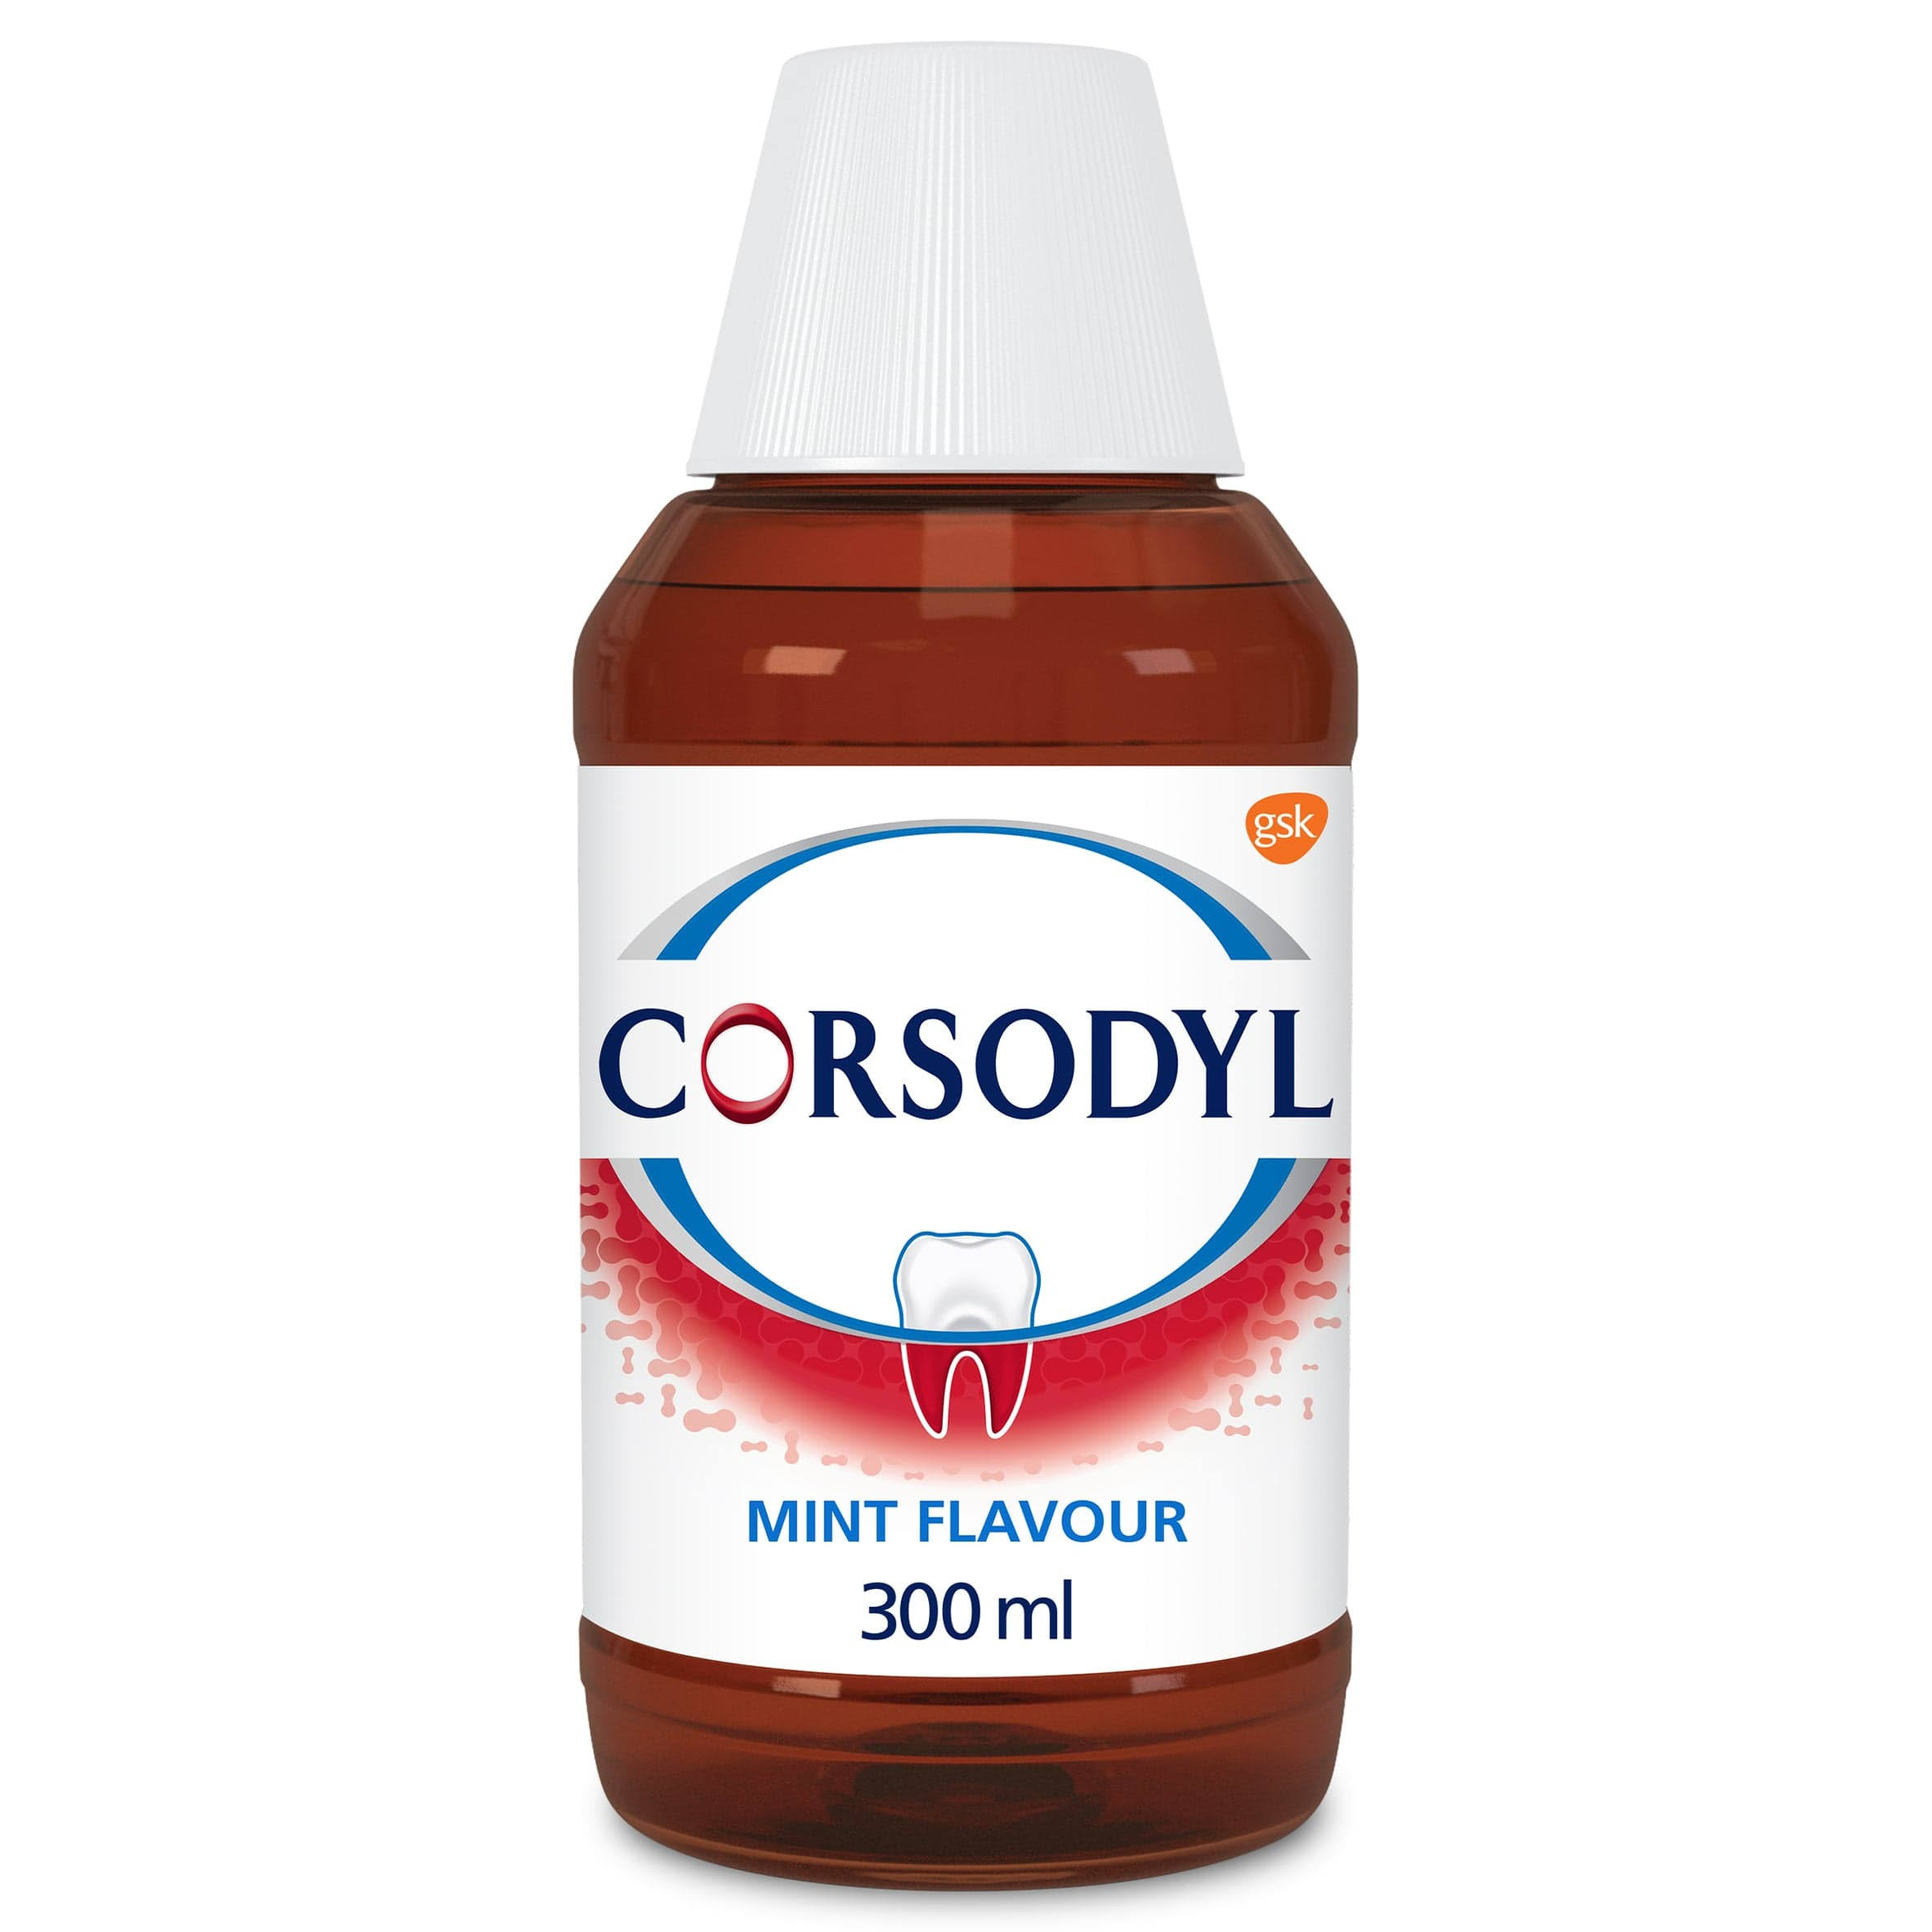 Corsodyl Mouthwash - Mint Flavour, 300ml